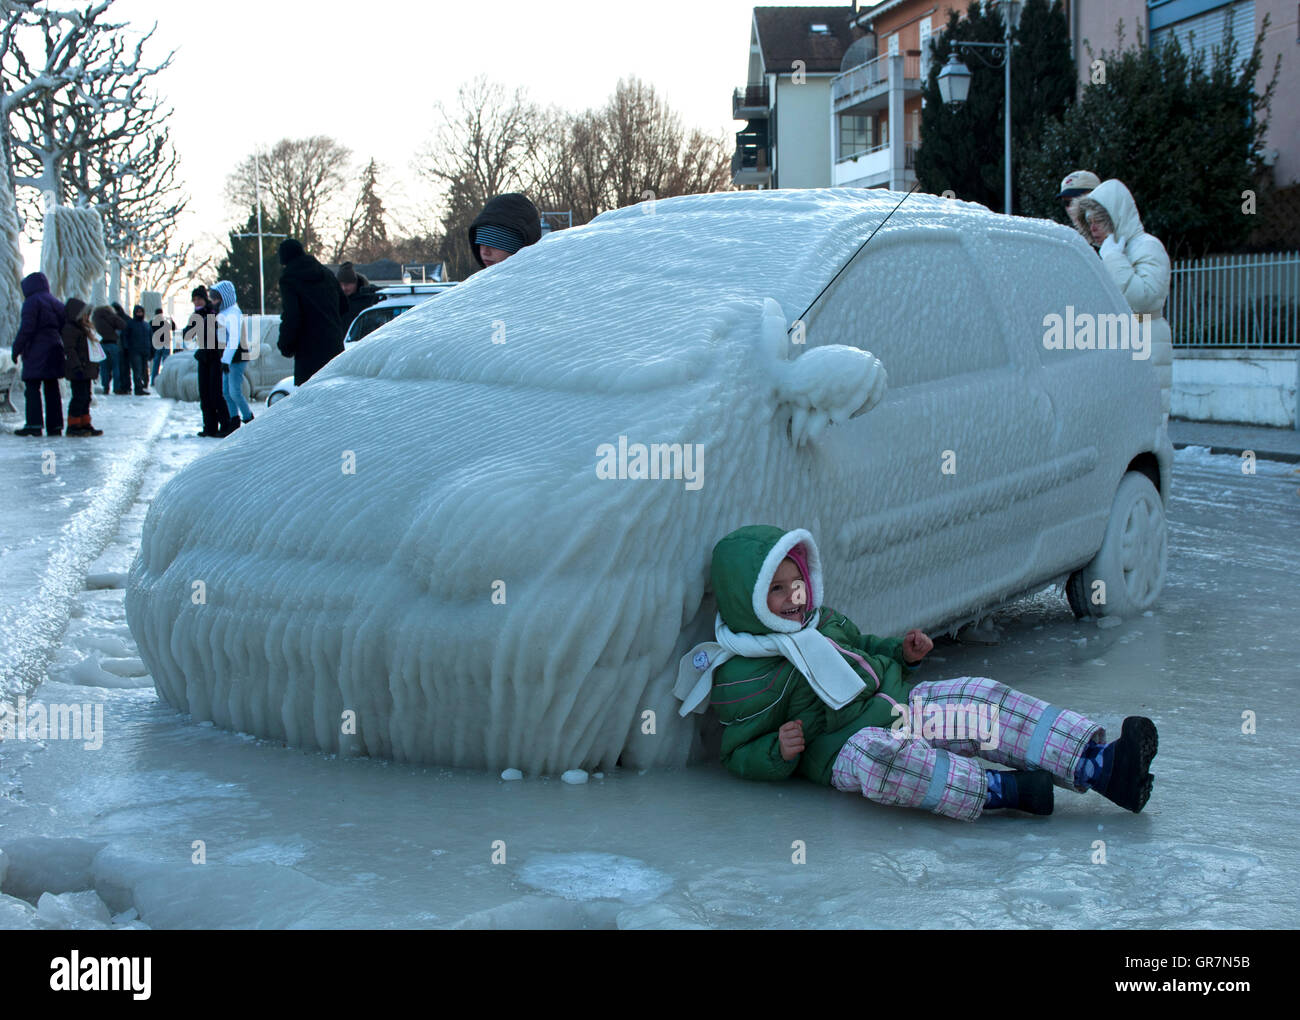 Gefrorene Heckscheibe Des Autos, Bedeckt Mit Eis Und Schnee an Einem  Wintertag Stockbild - Bild von transport, abgedeckt: 137177809